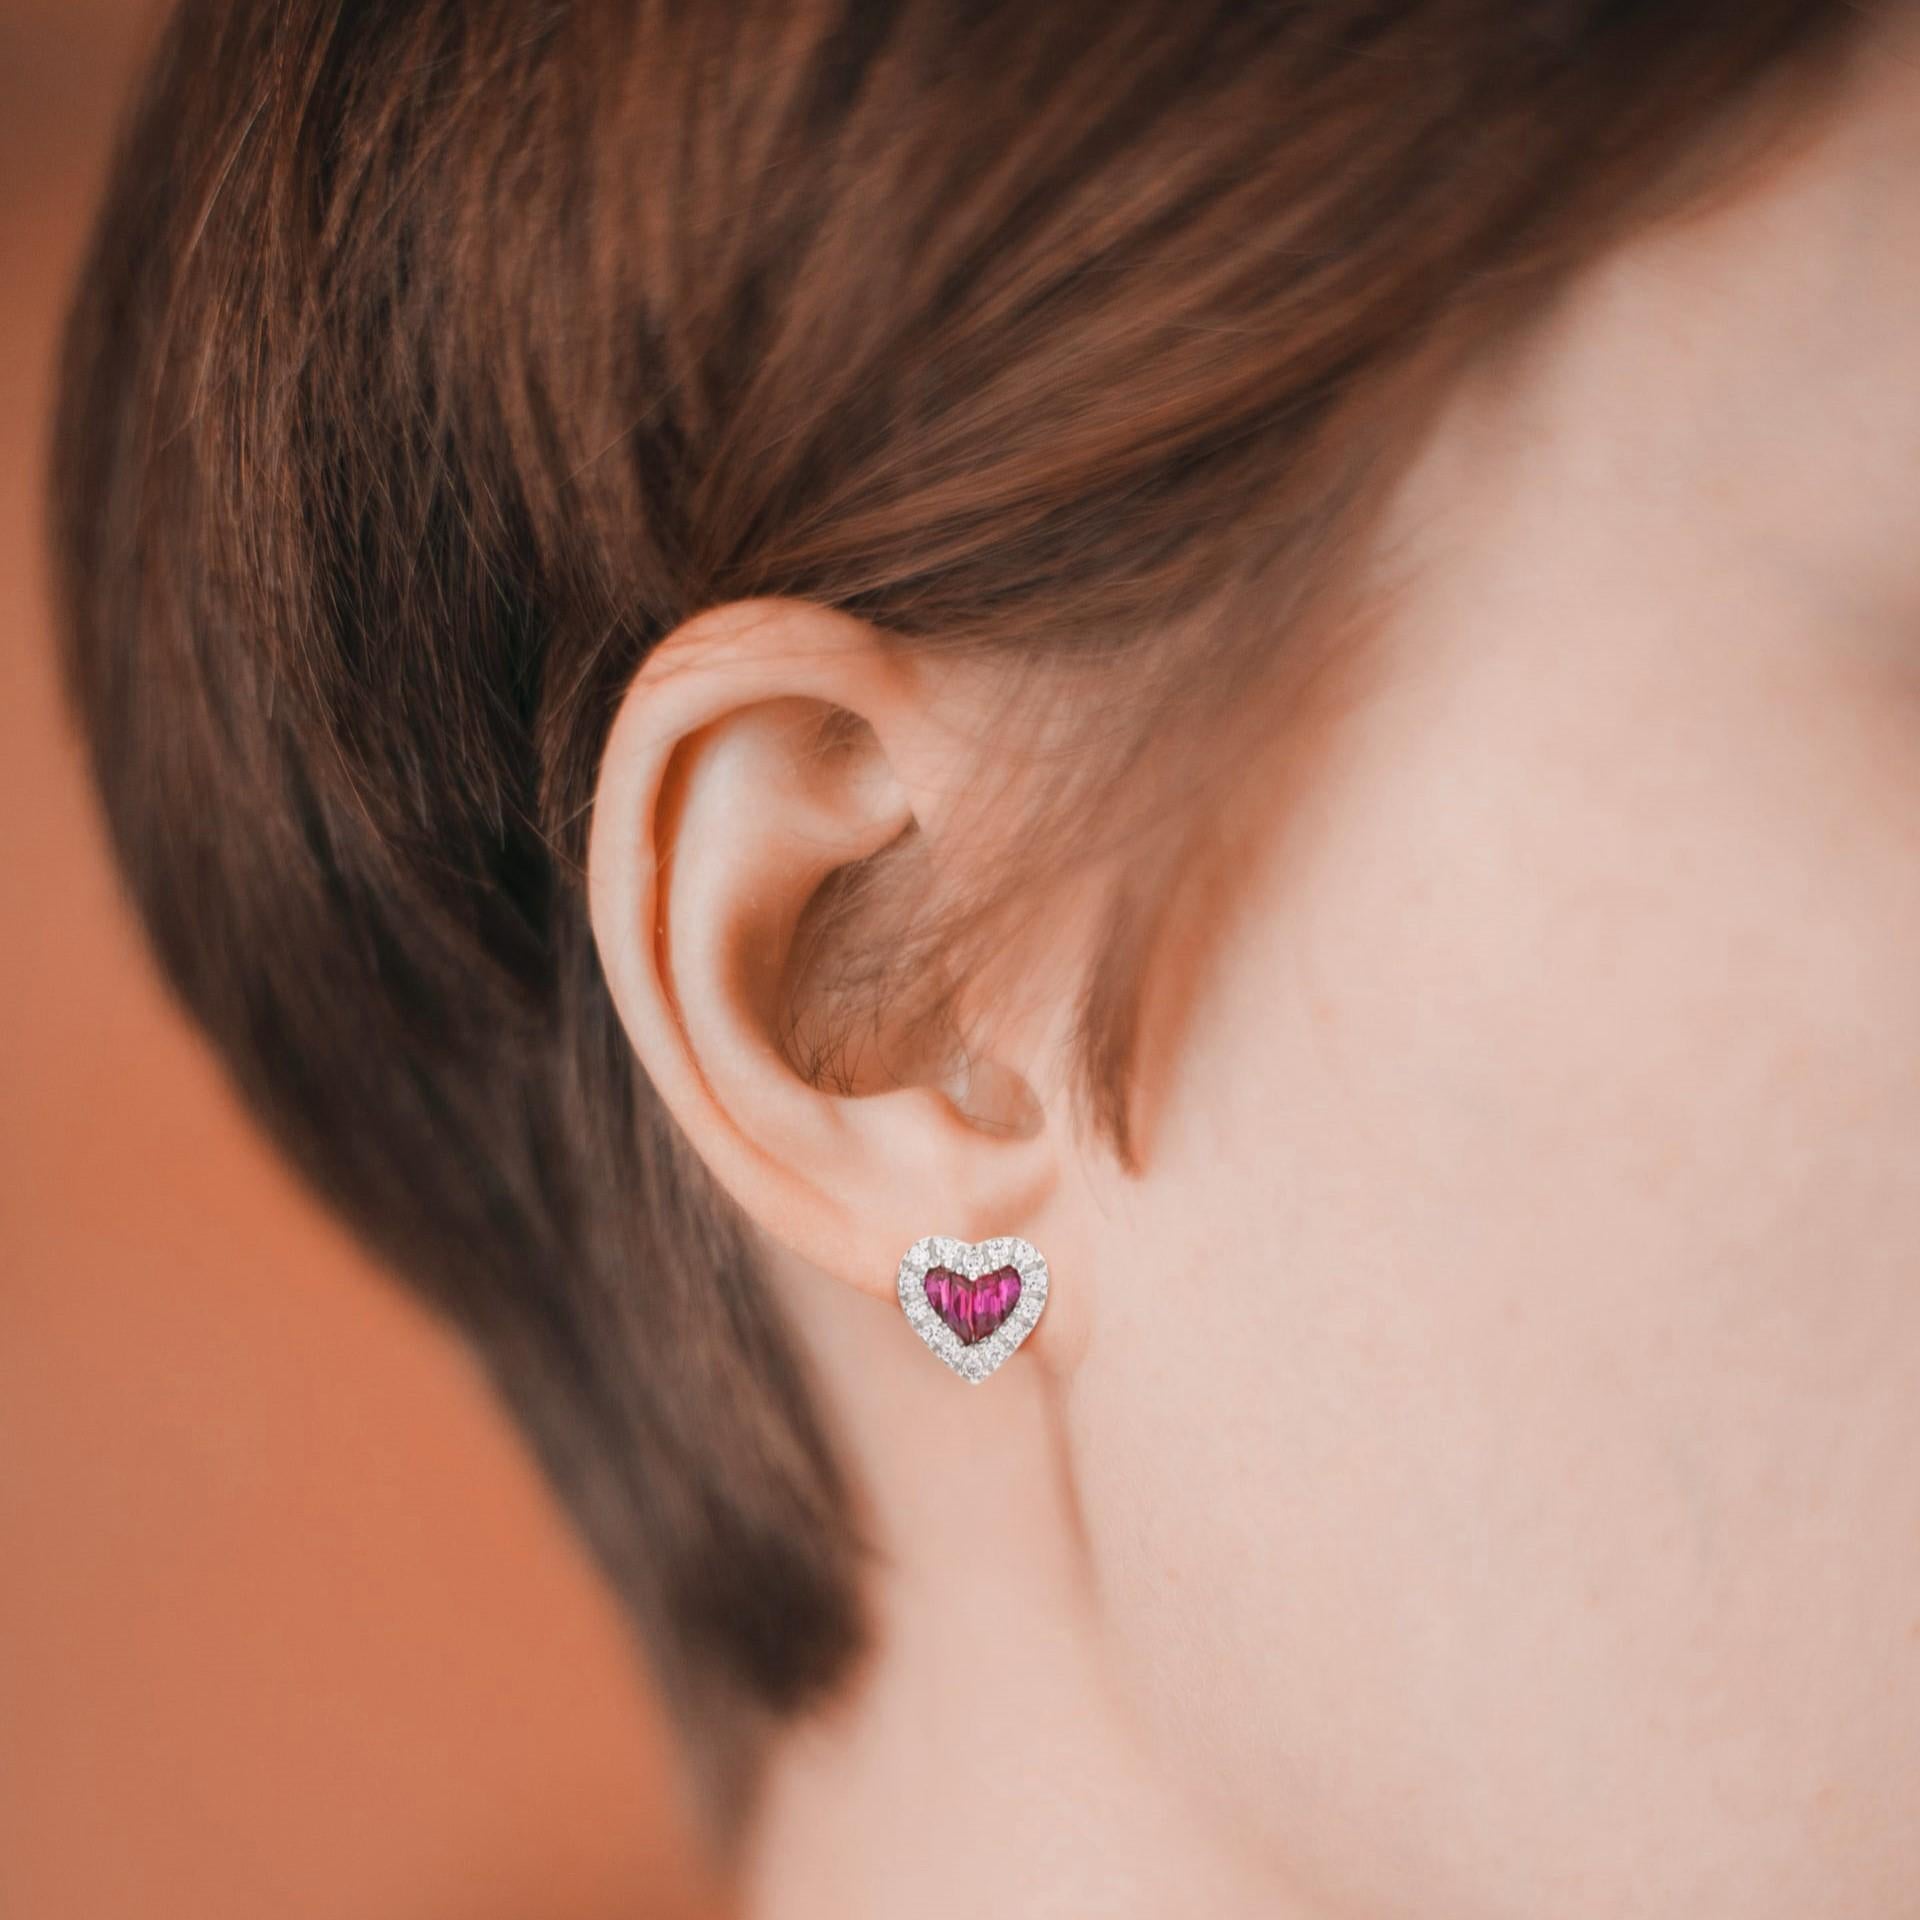 Tragen Sie die Liebe immer bei sich, wenn Sie diese leuchtenden herzförmigen Rubin- und Diamant-Ohrringe tragen. Diese schlichten, aber aussagekräftigen Herz-Ohrringe sind ein ideales Geschenk für Ihre Liebste.

Informationen
Metall: 14K